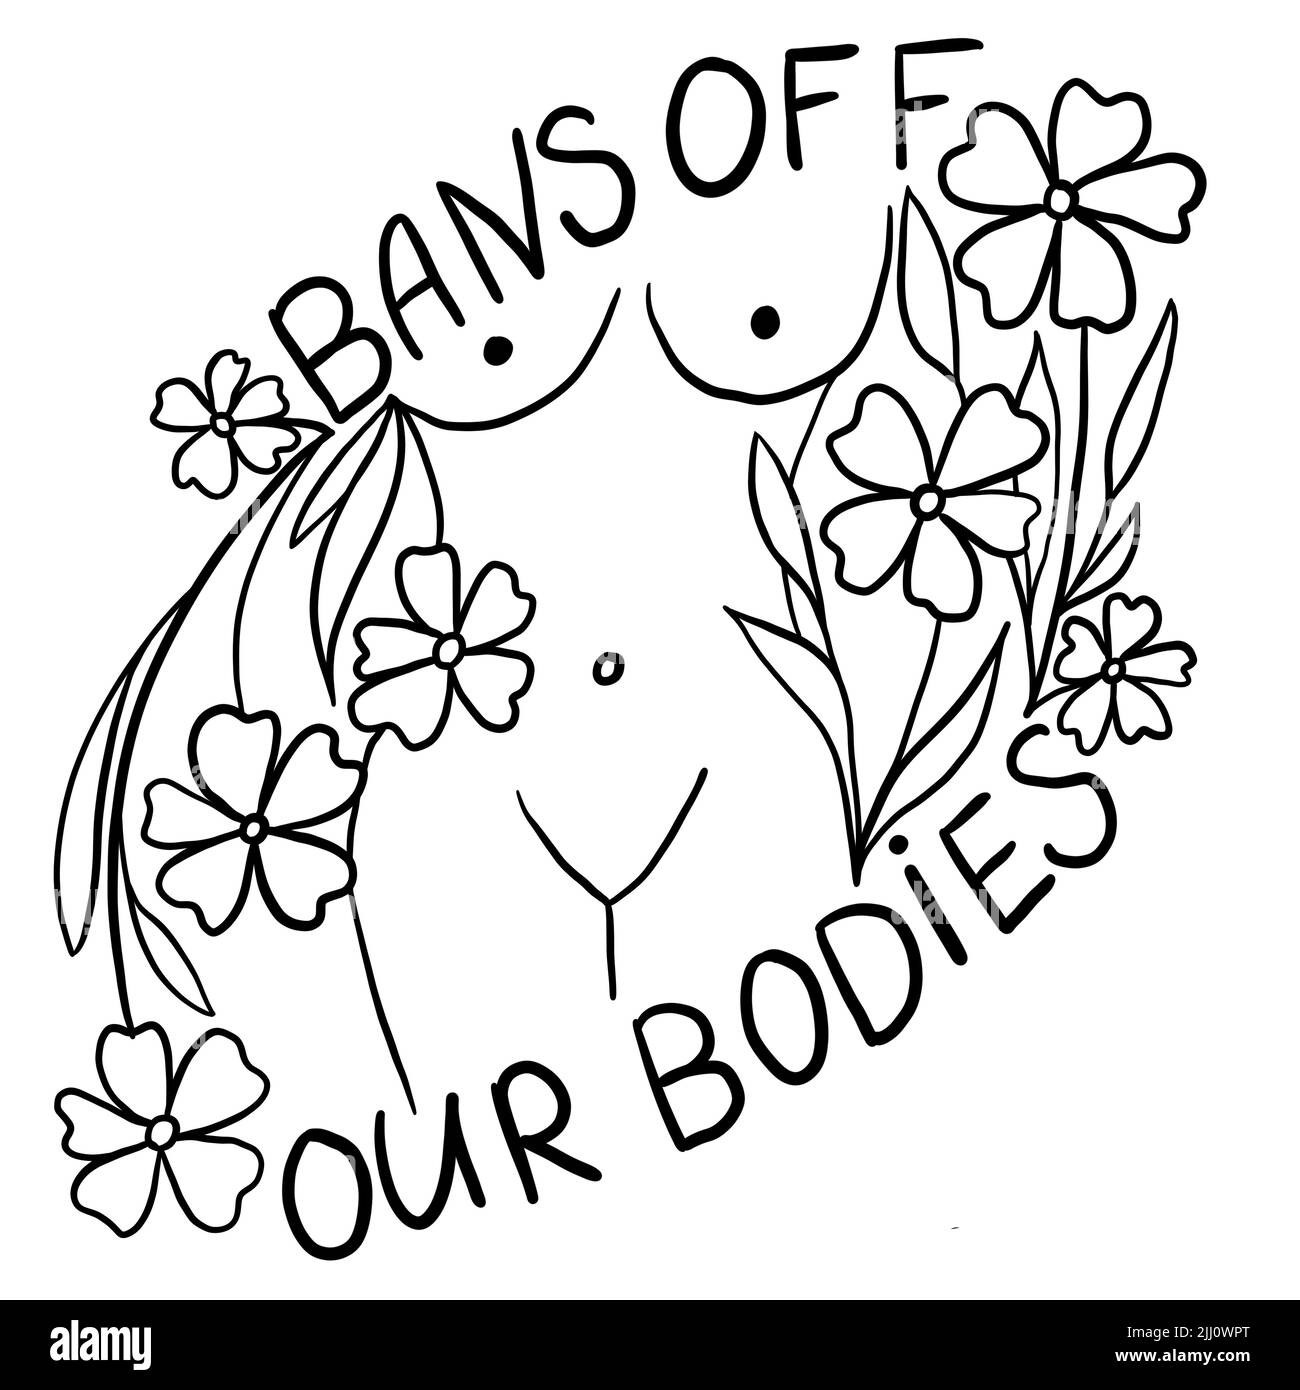 Prohibiciones de nuestros cuerpos dibujado a mano ilustración con el cuerpo de la mujer. Concepto de activismo feminista, derechos reproductivos al aborto, diseño de fila v uada Foto de stock